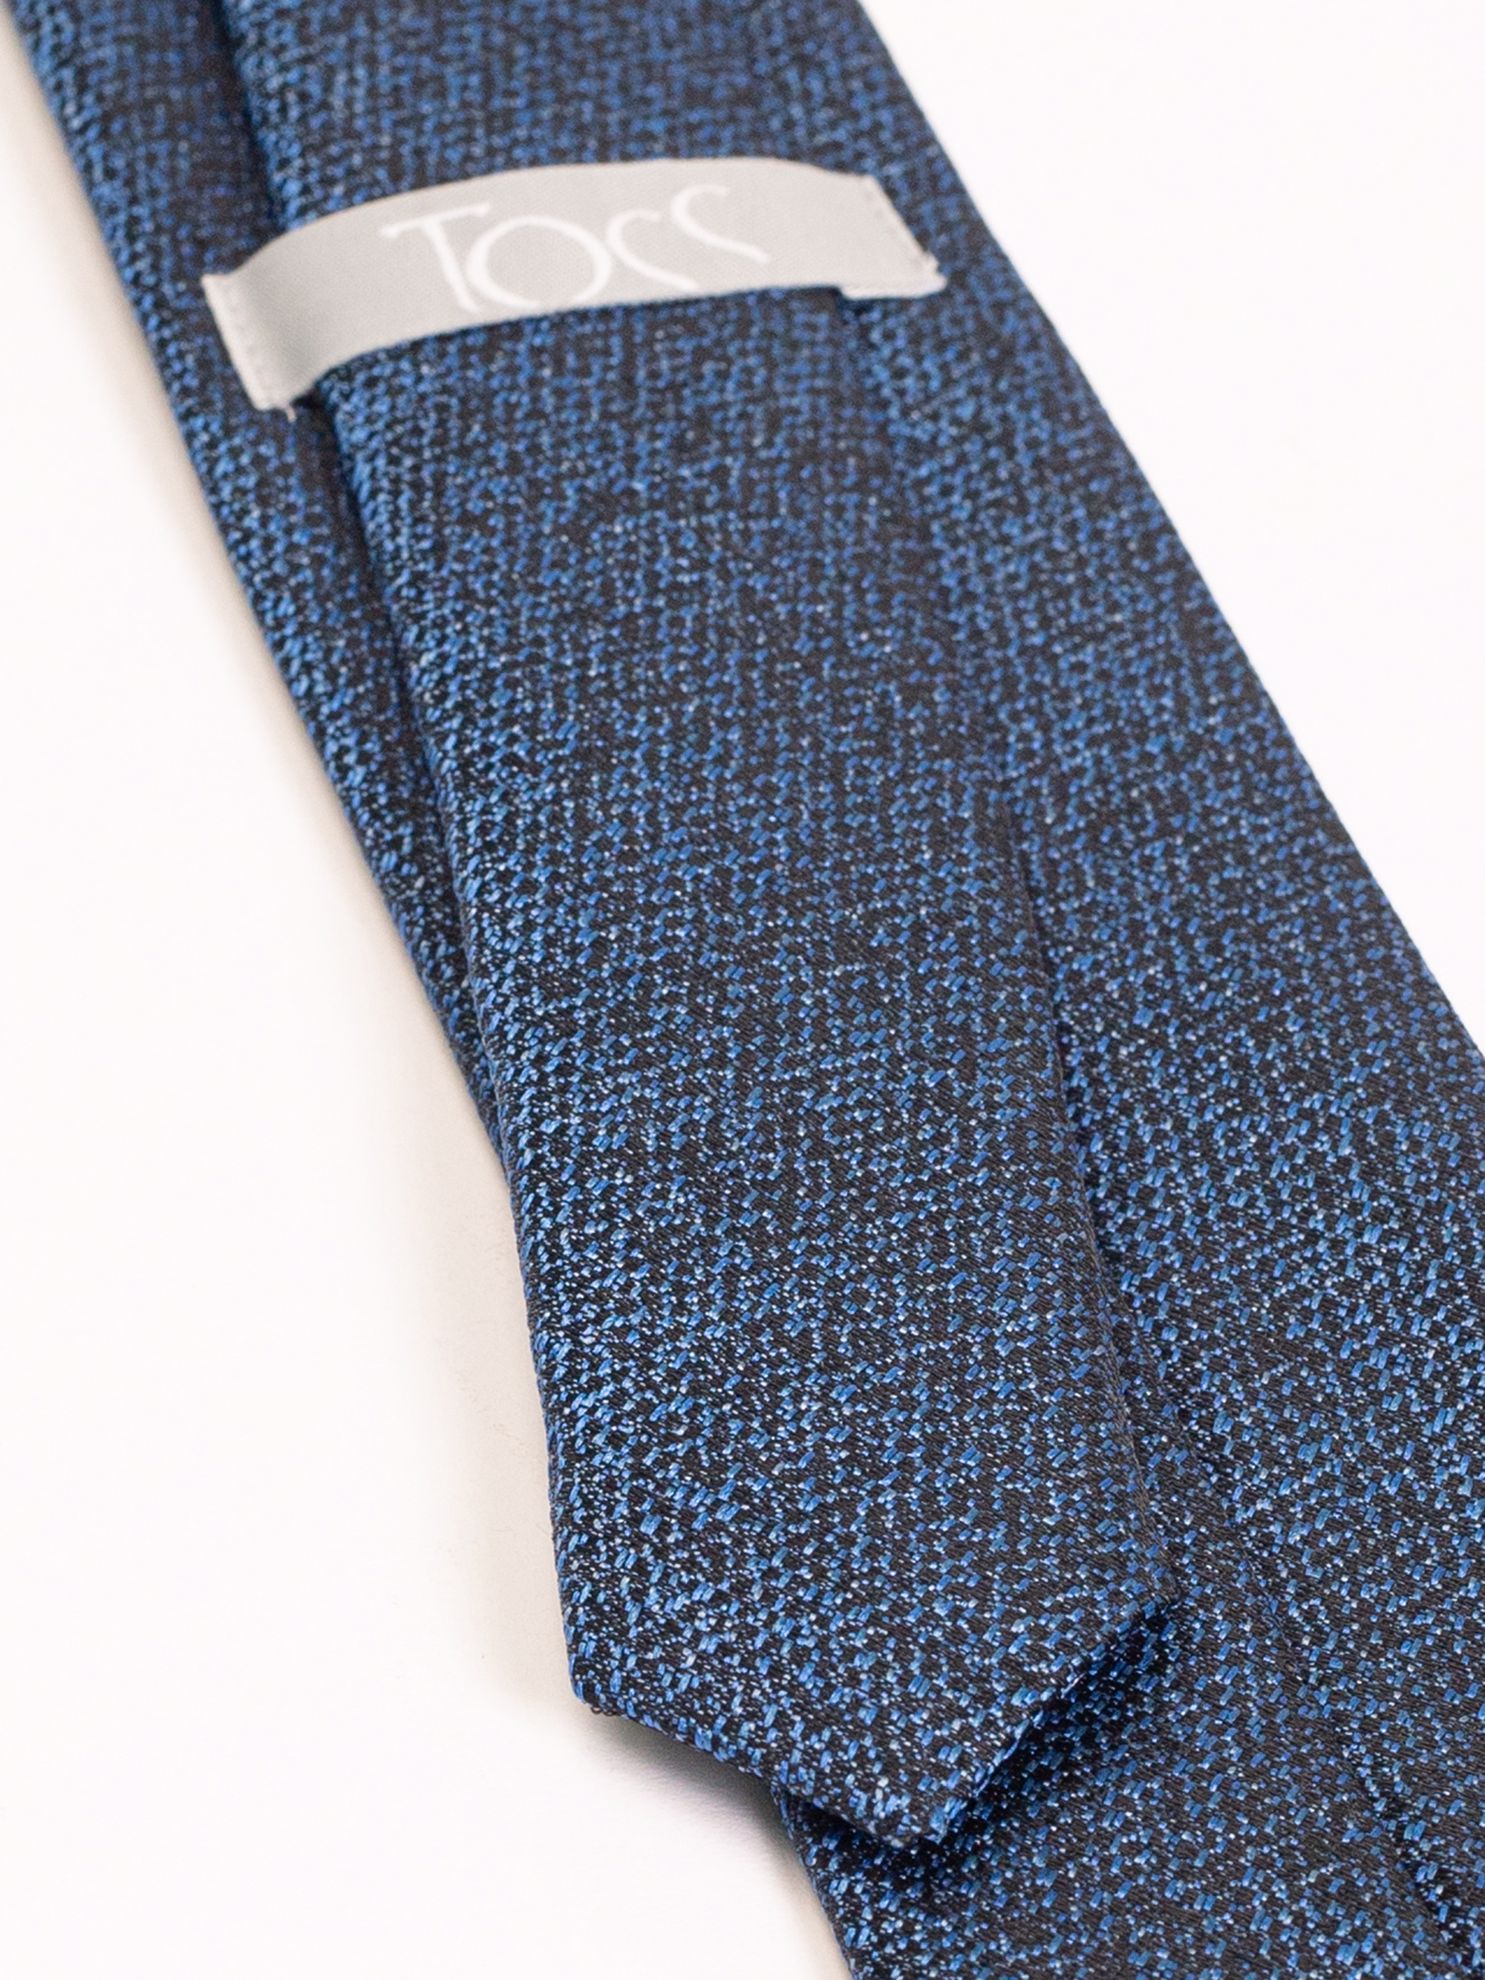 Toss Erkek Kravat-Saks Mavi. ürün görseli